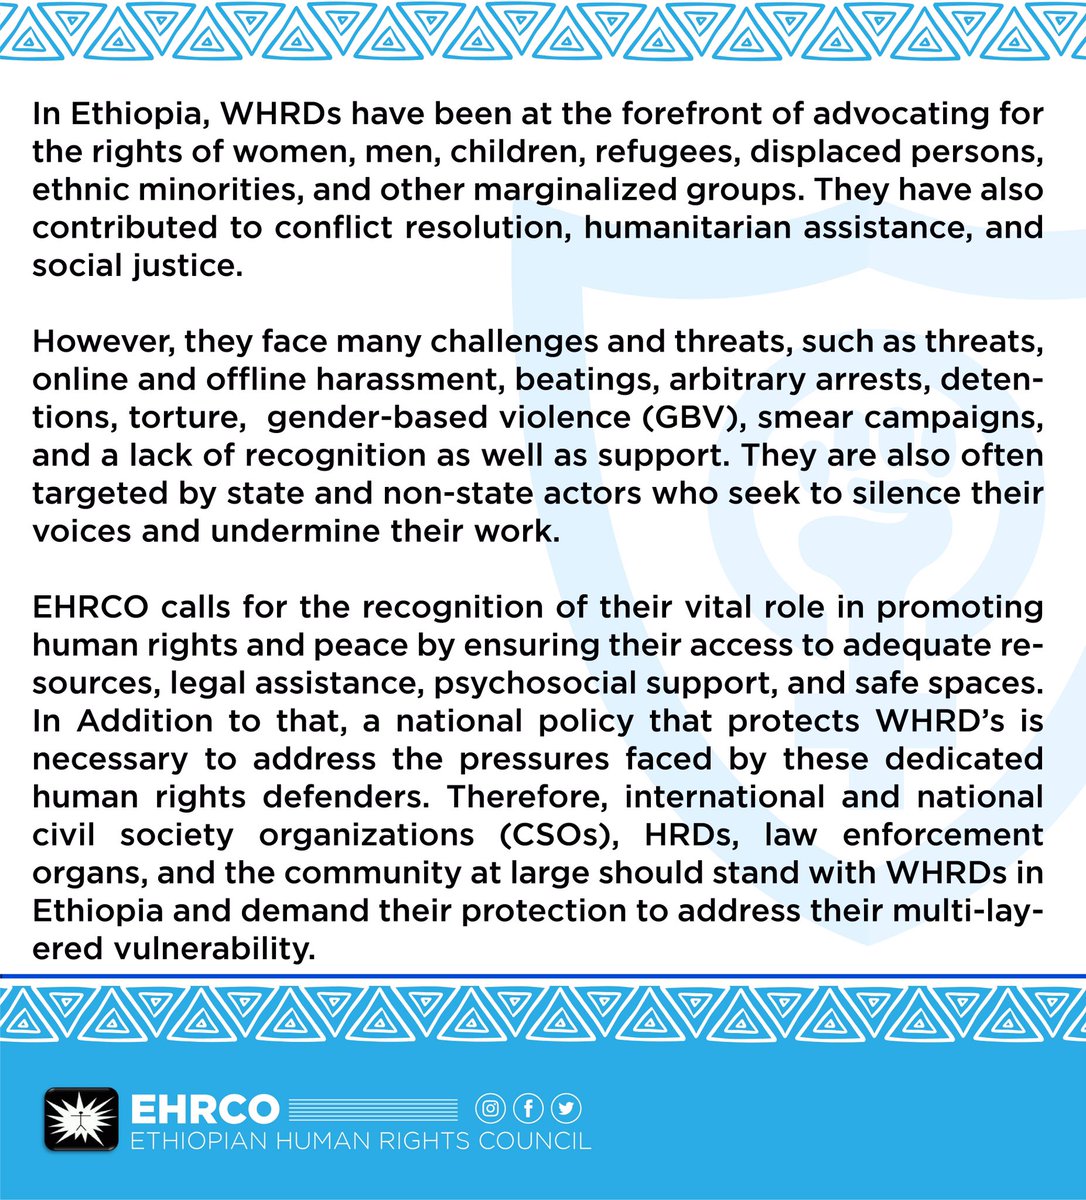 ለሴቶች የሰብአዊ መብት ተሟጋቾች ጥበቃ እንዲደረግ በመወትወት የኢሰመጉን ጥሪ ይቀላቀሉ። Join EHRCO’s call by advocating for the protection of WHRDs.